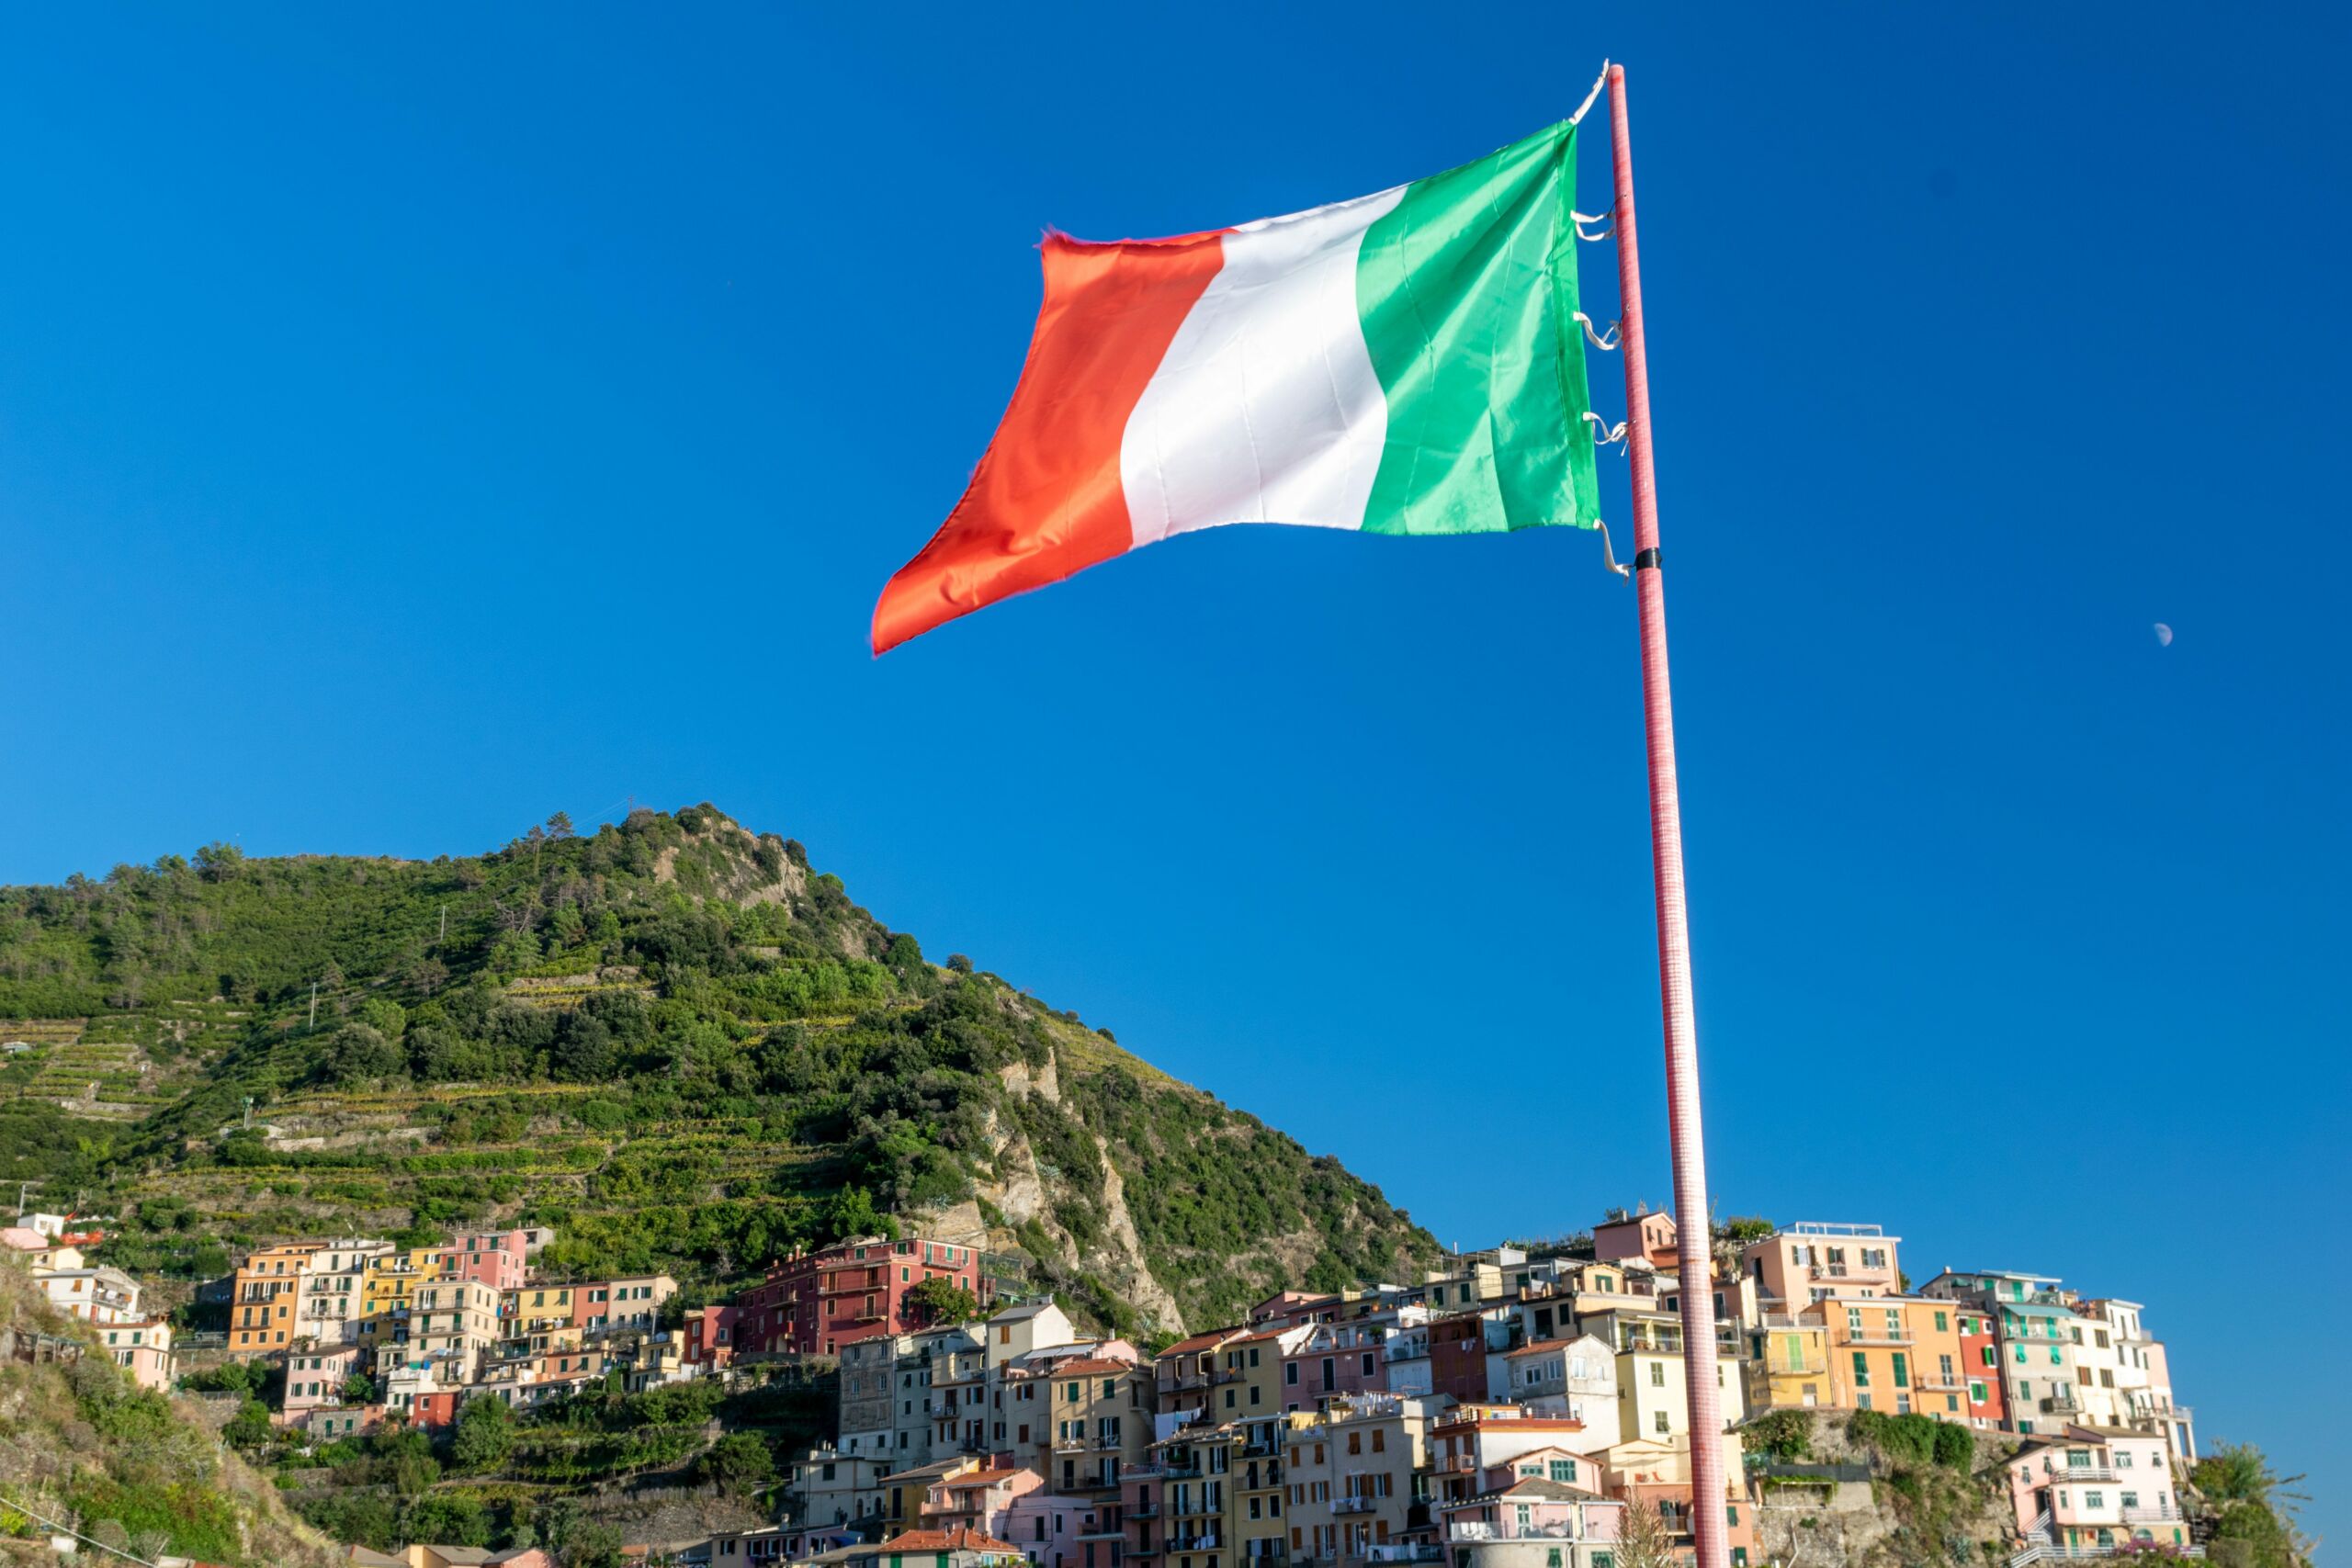 Flaga Włoch